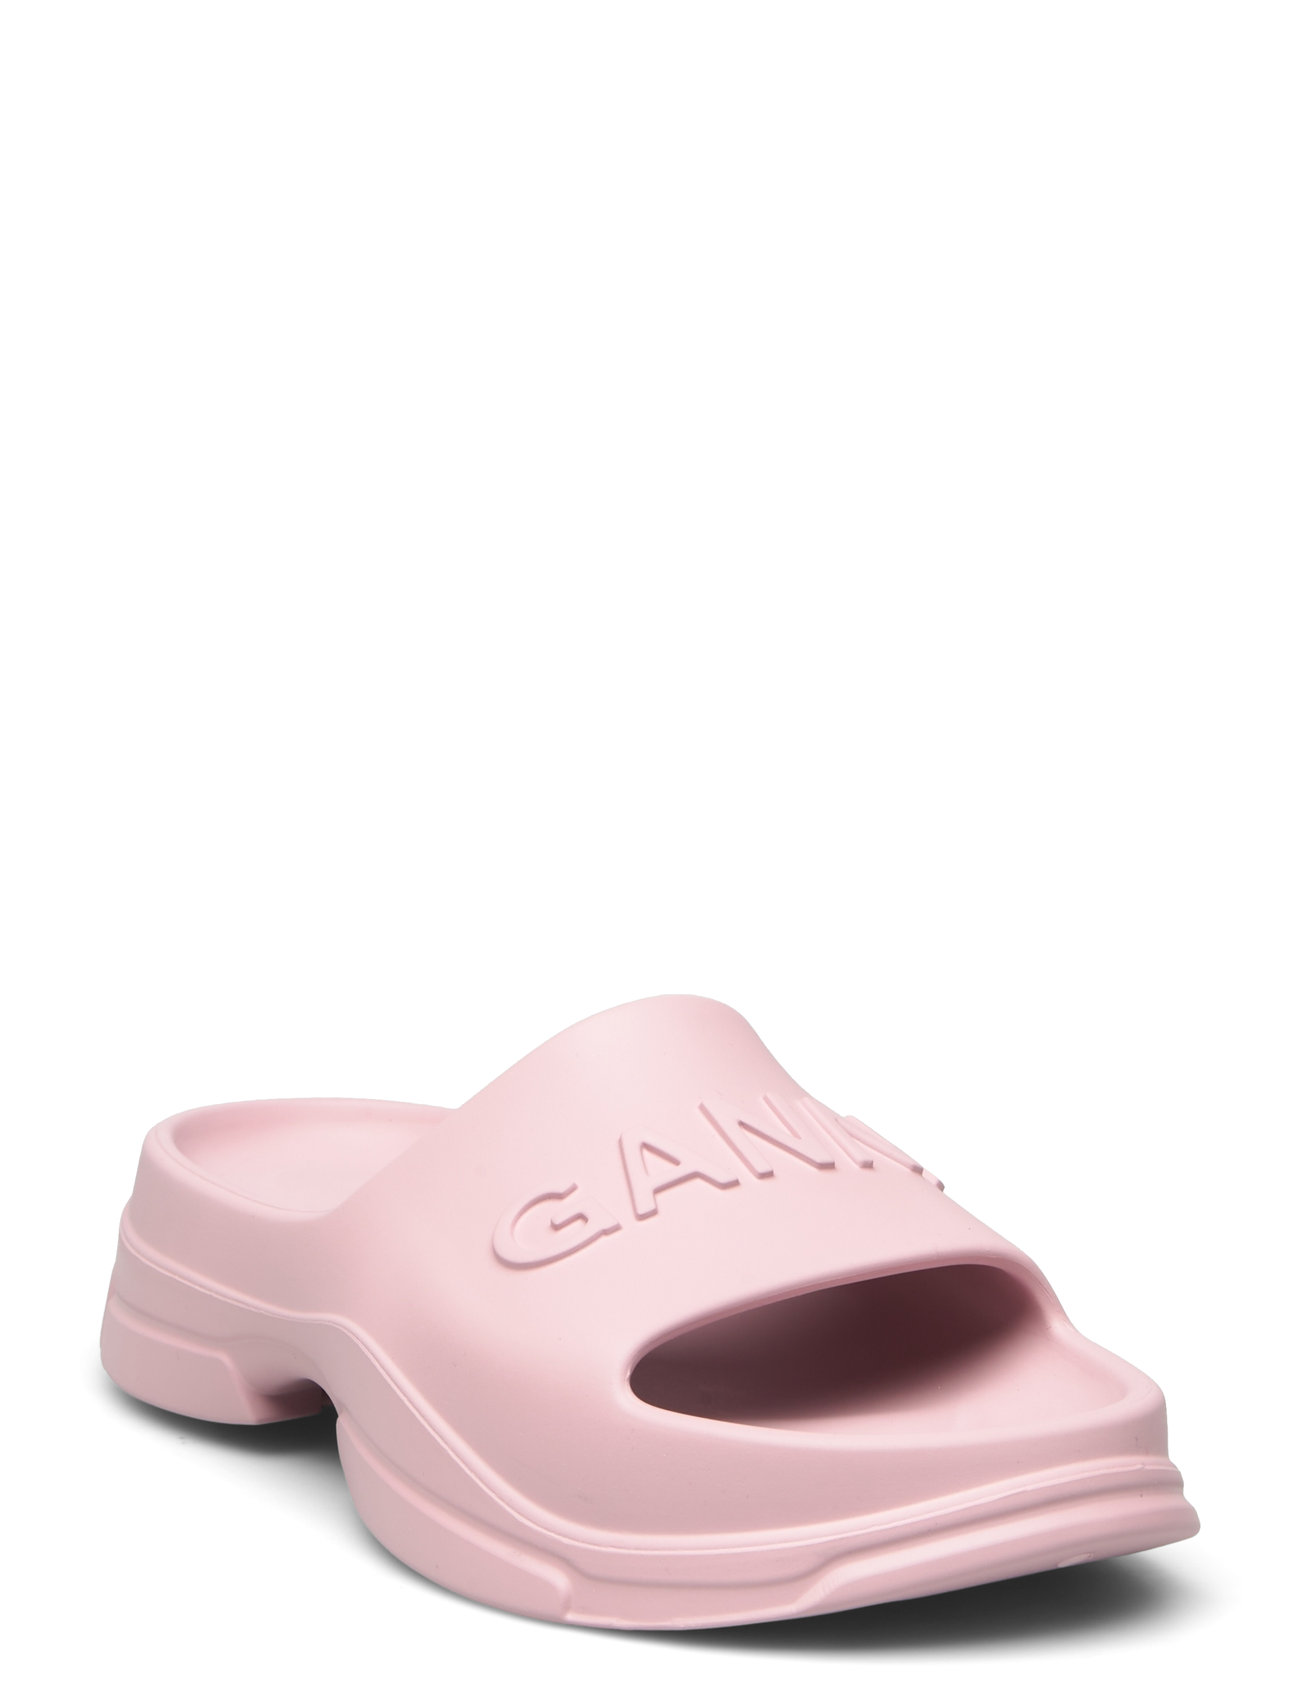 Light Weight Designers Summer Shoes Sandals Flip Flops Pink Ganni